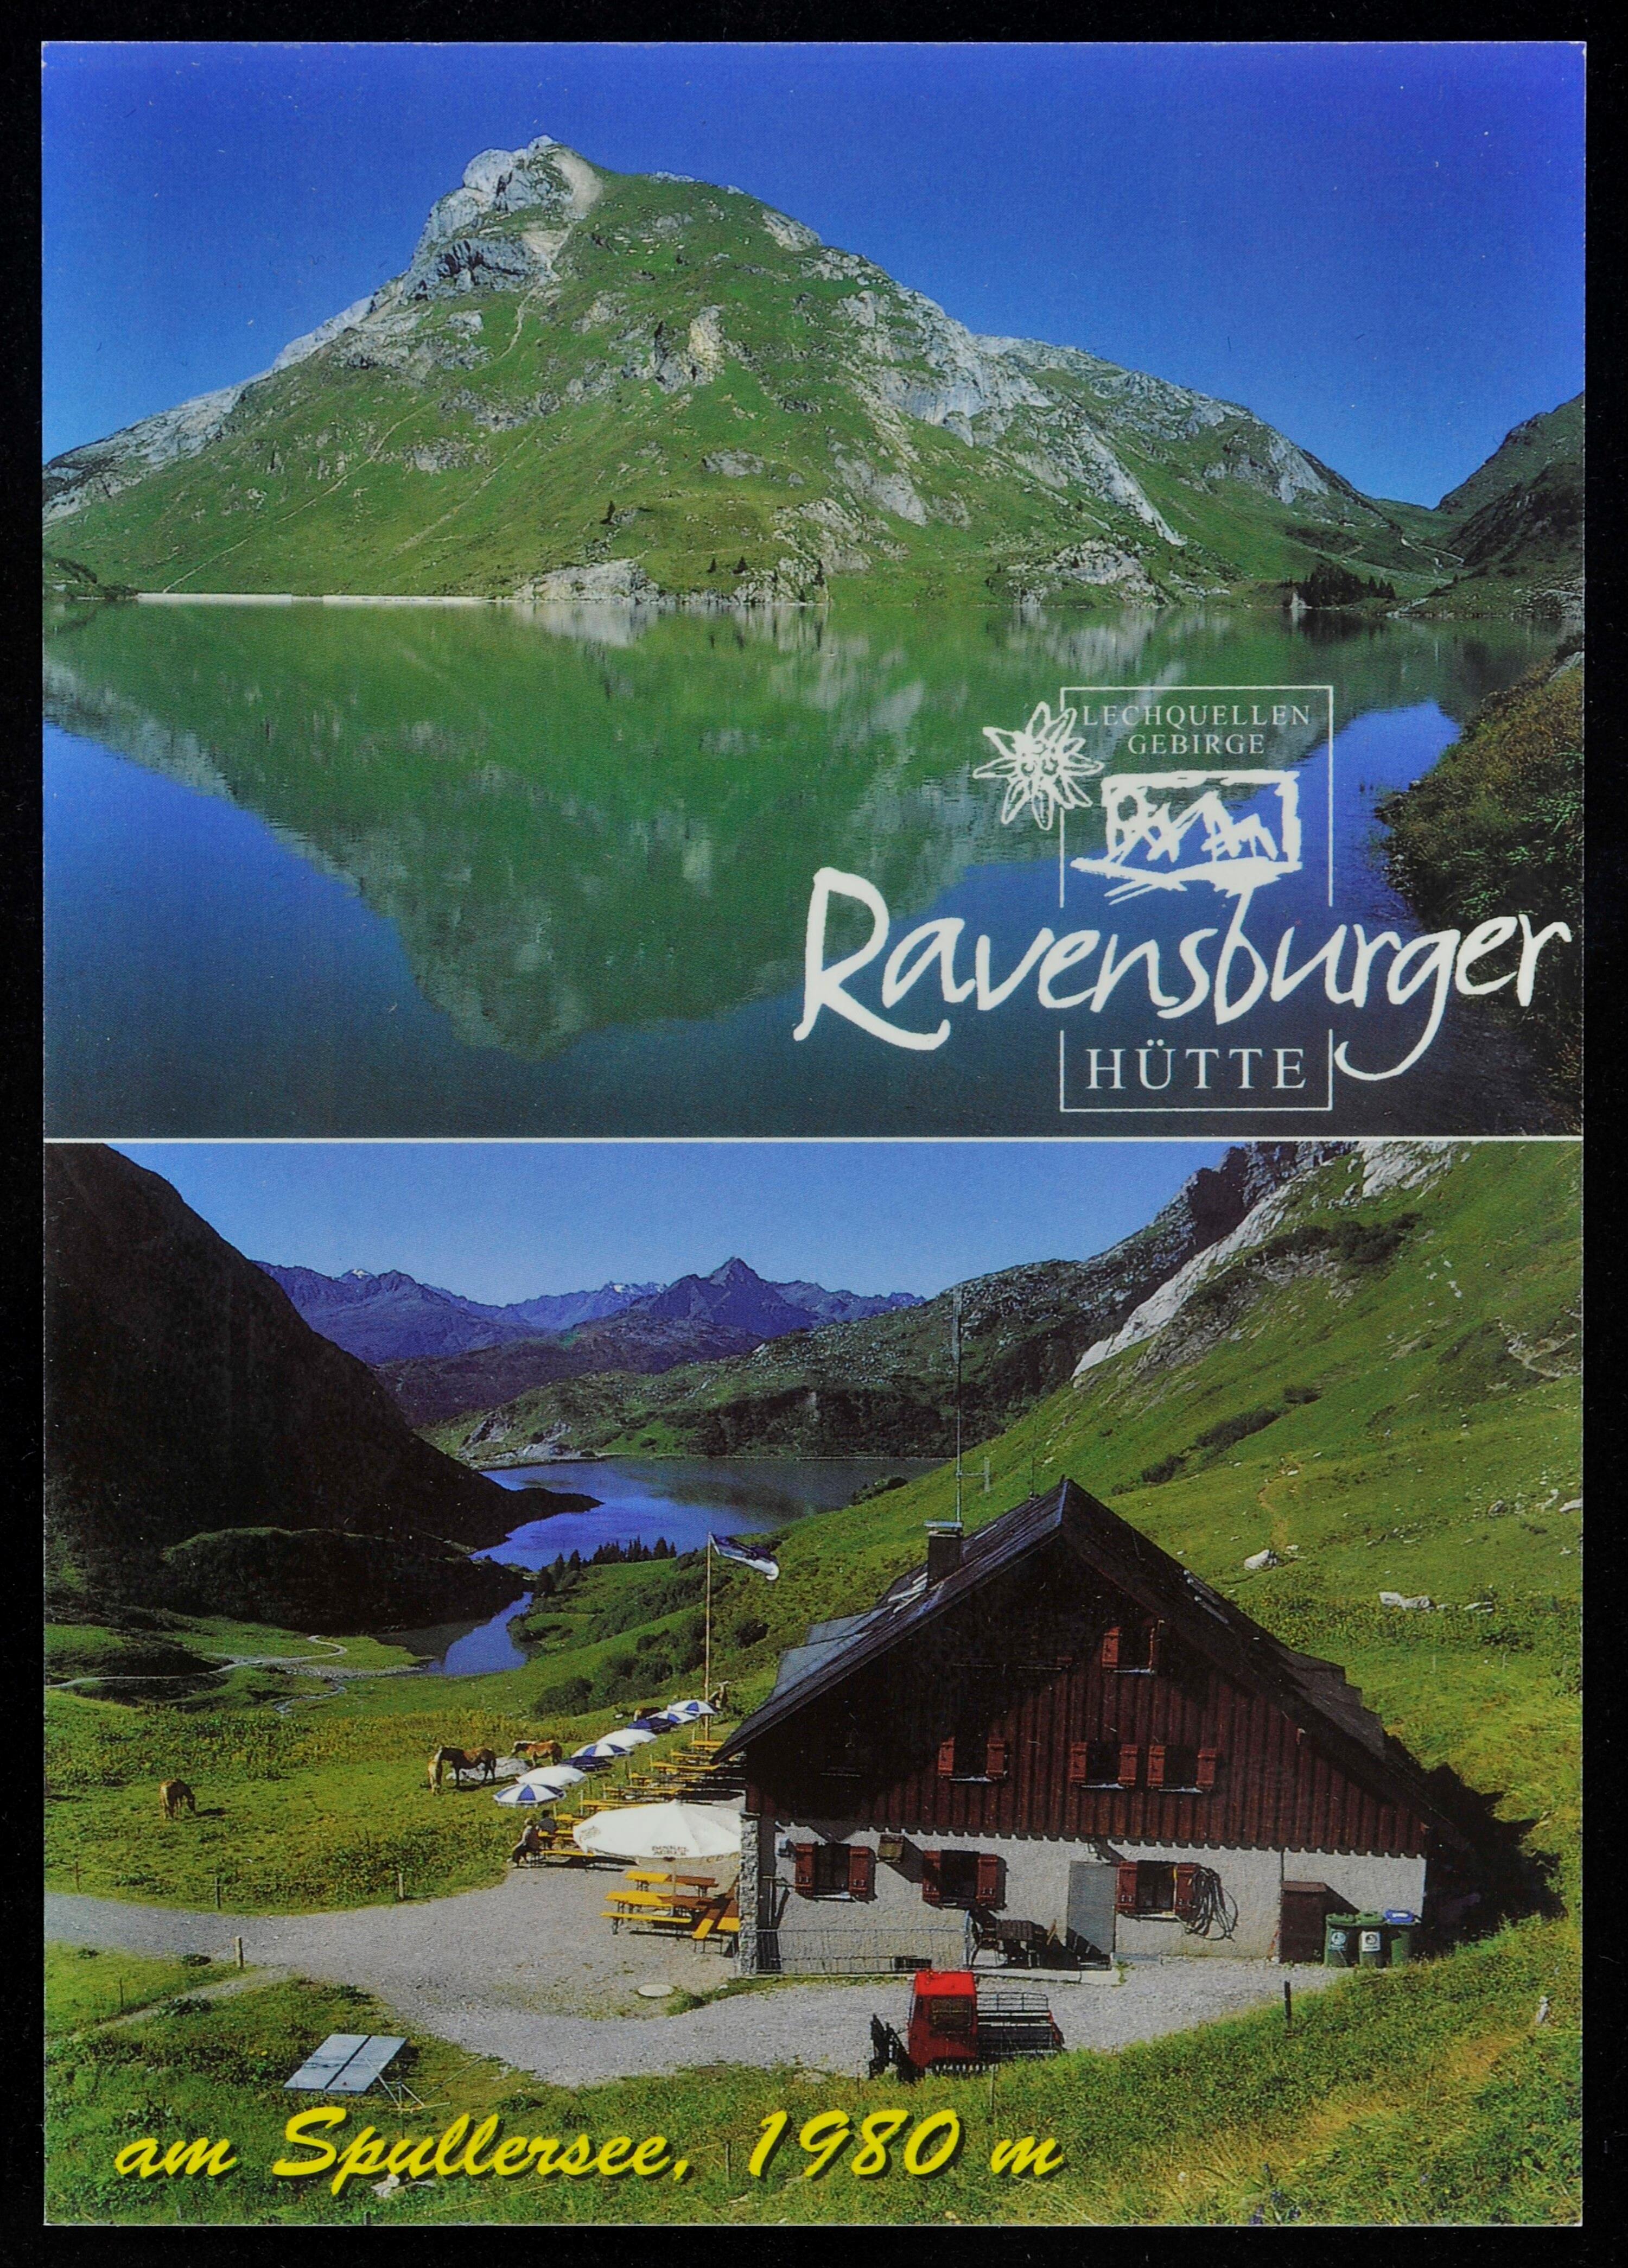 [Dalaas] Lechquellen Gebirge Ravensburger Hütte am Spullersee, 1980 m></div>


    <hr>
    <div class=